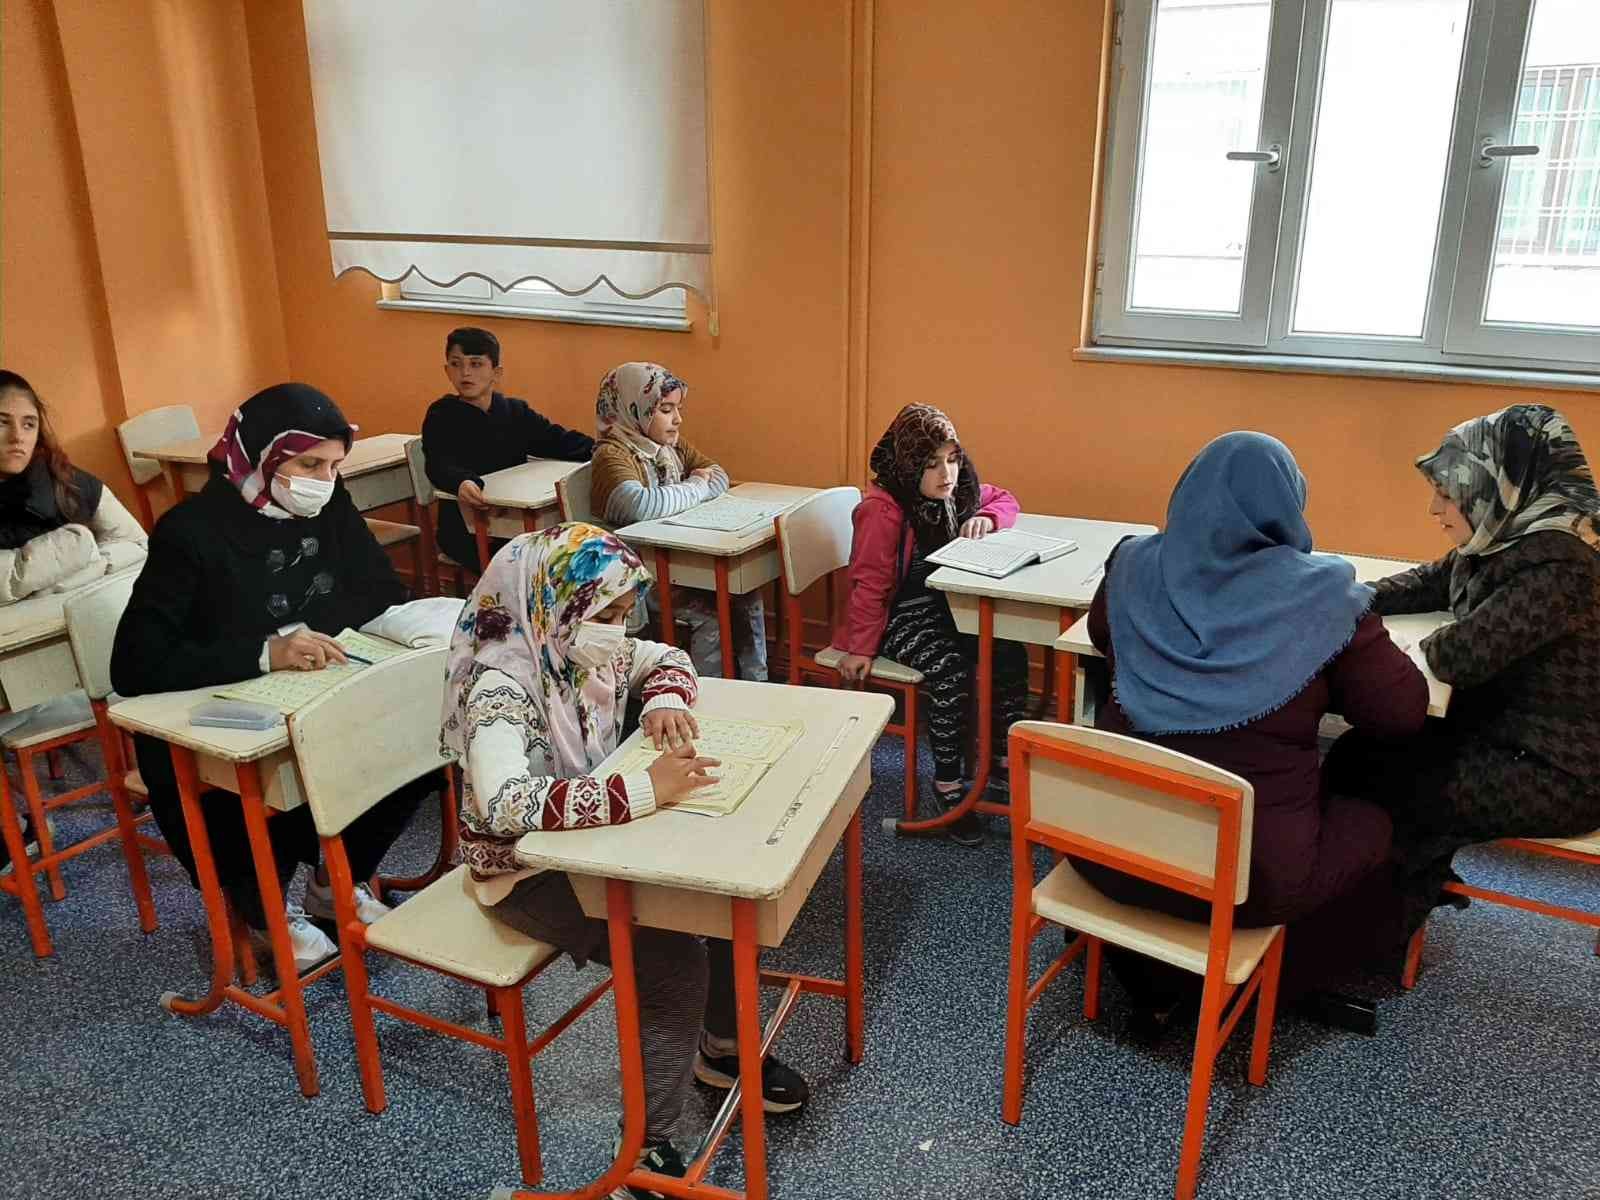 Bağlar Belediyesi’nin açtığı Kur’an-ı Kerim kursları, ev hanımlarından çocuklara kadar umut oldu #diyarbakir